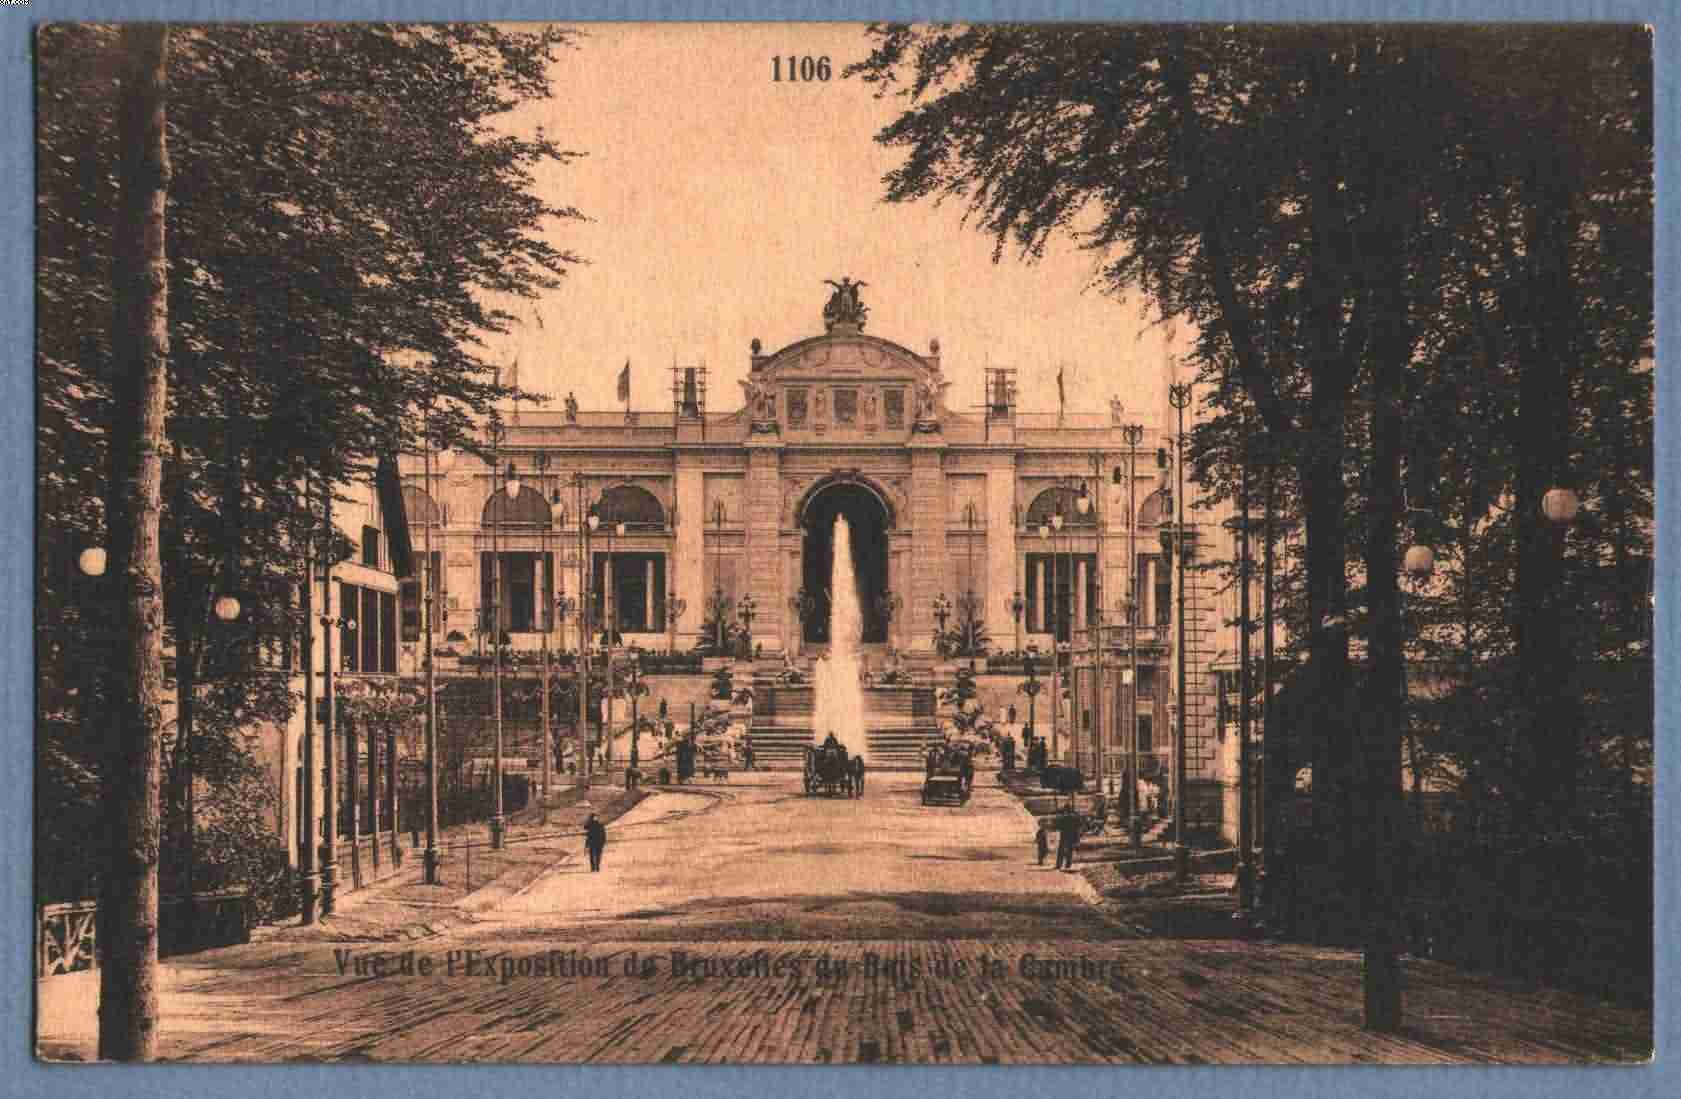 ** BRUXELLES - BRUSSEL ** Exposition 1910 (Vue De L'expo De Bruxelles Du Bois De La Cambre), Zicht Op Expo Vanuit Bos - Brussels By Night